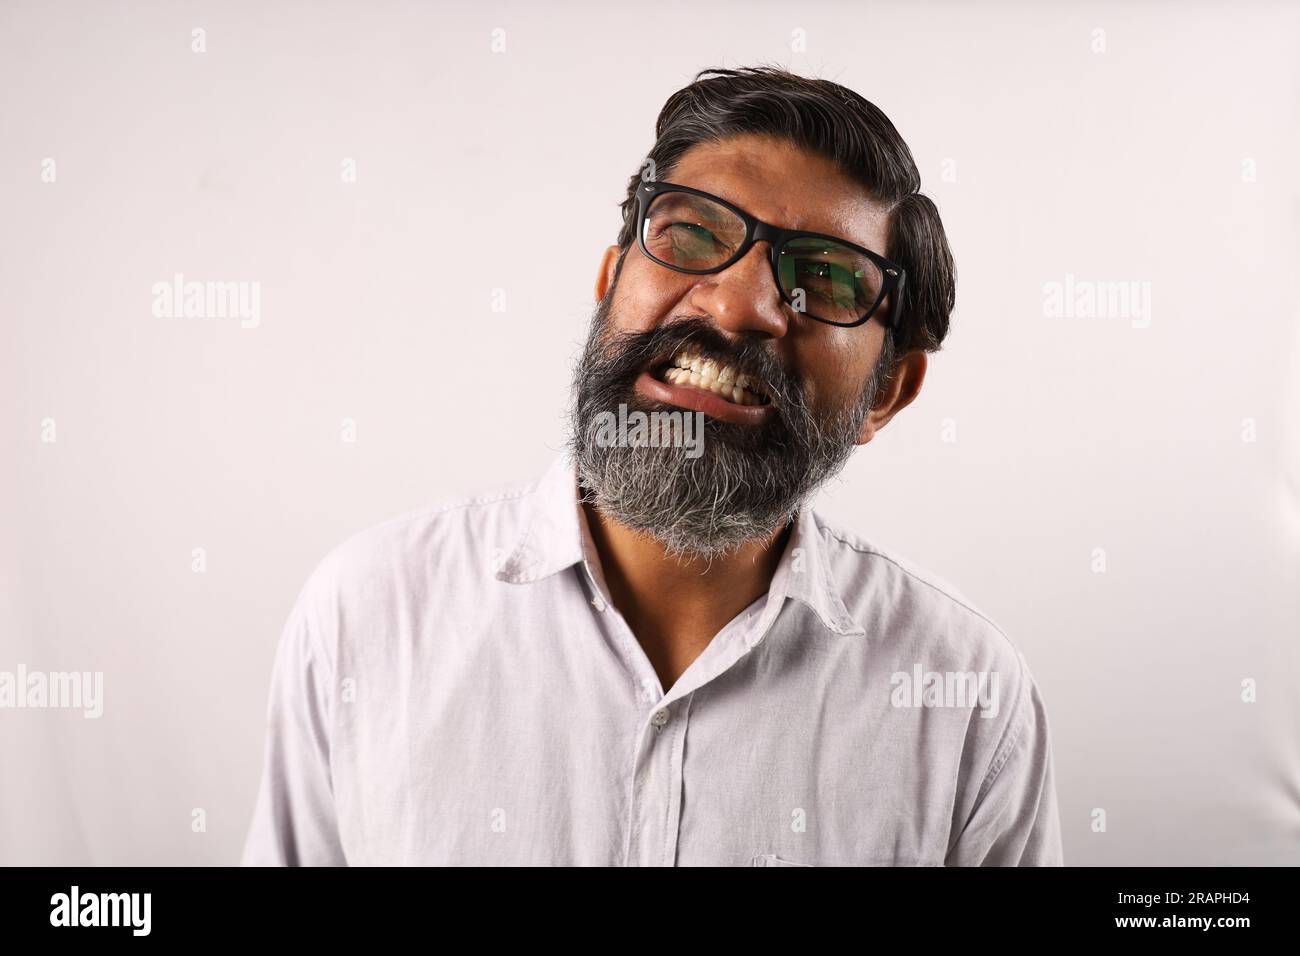 Portrait d'un barbu indien portant une chemise. Expressions funky tristes et déprimées pleines de colère et d'agressivité. Banque D'Images